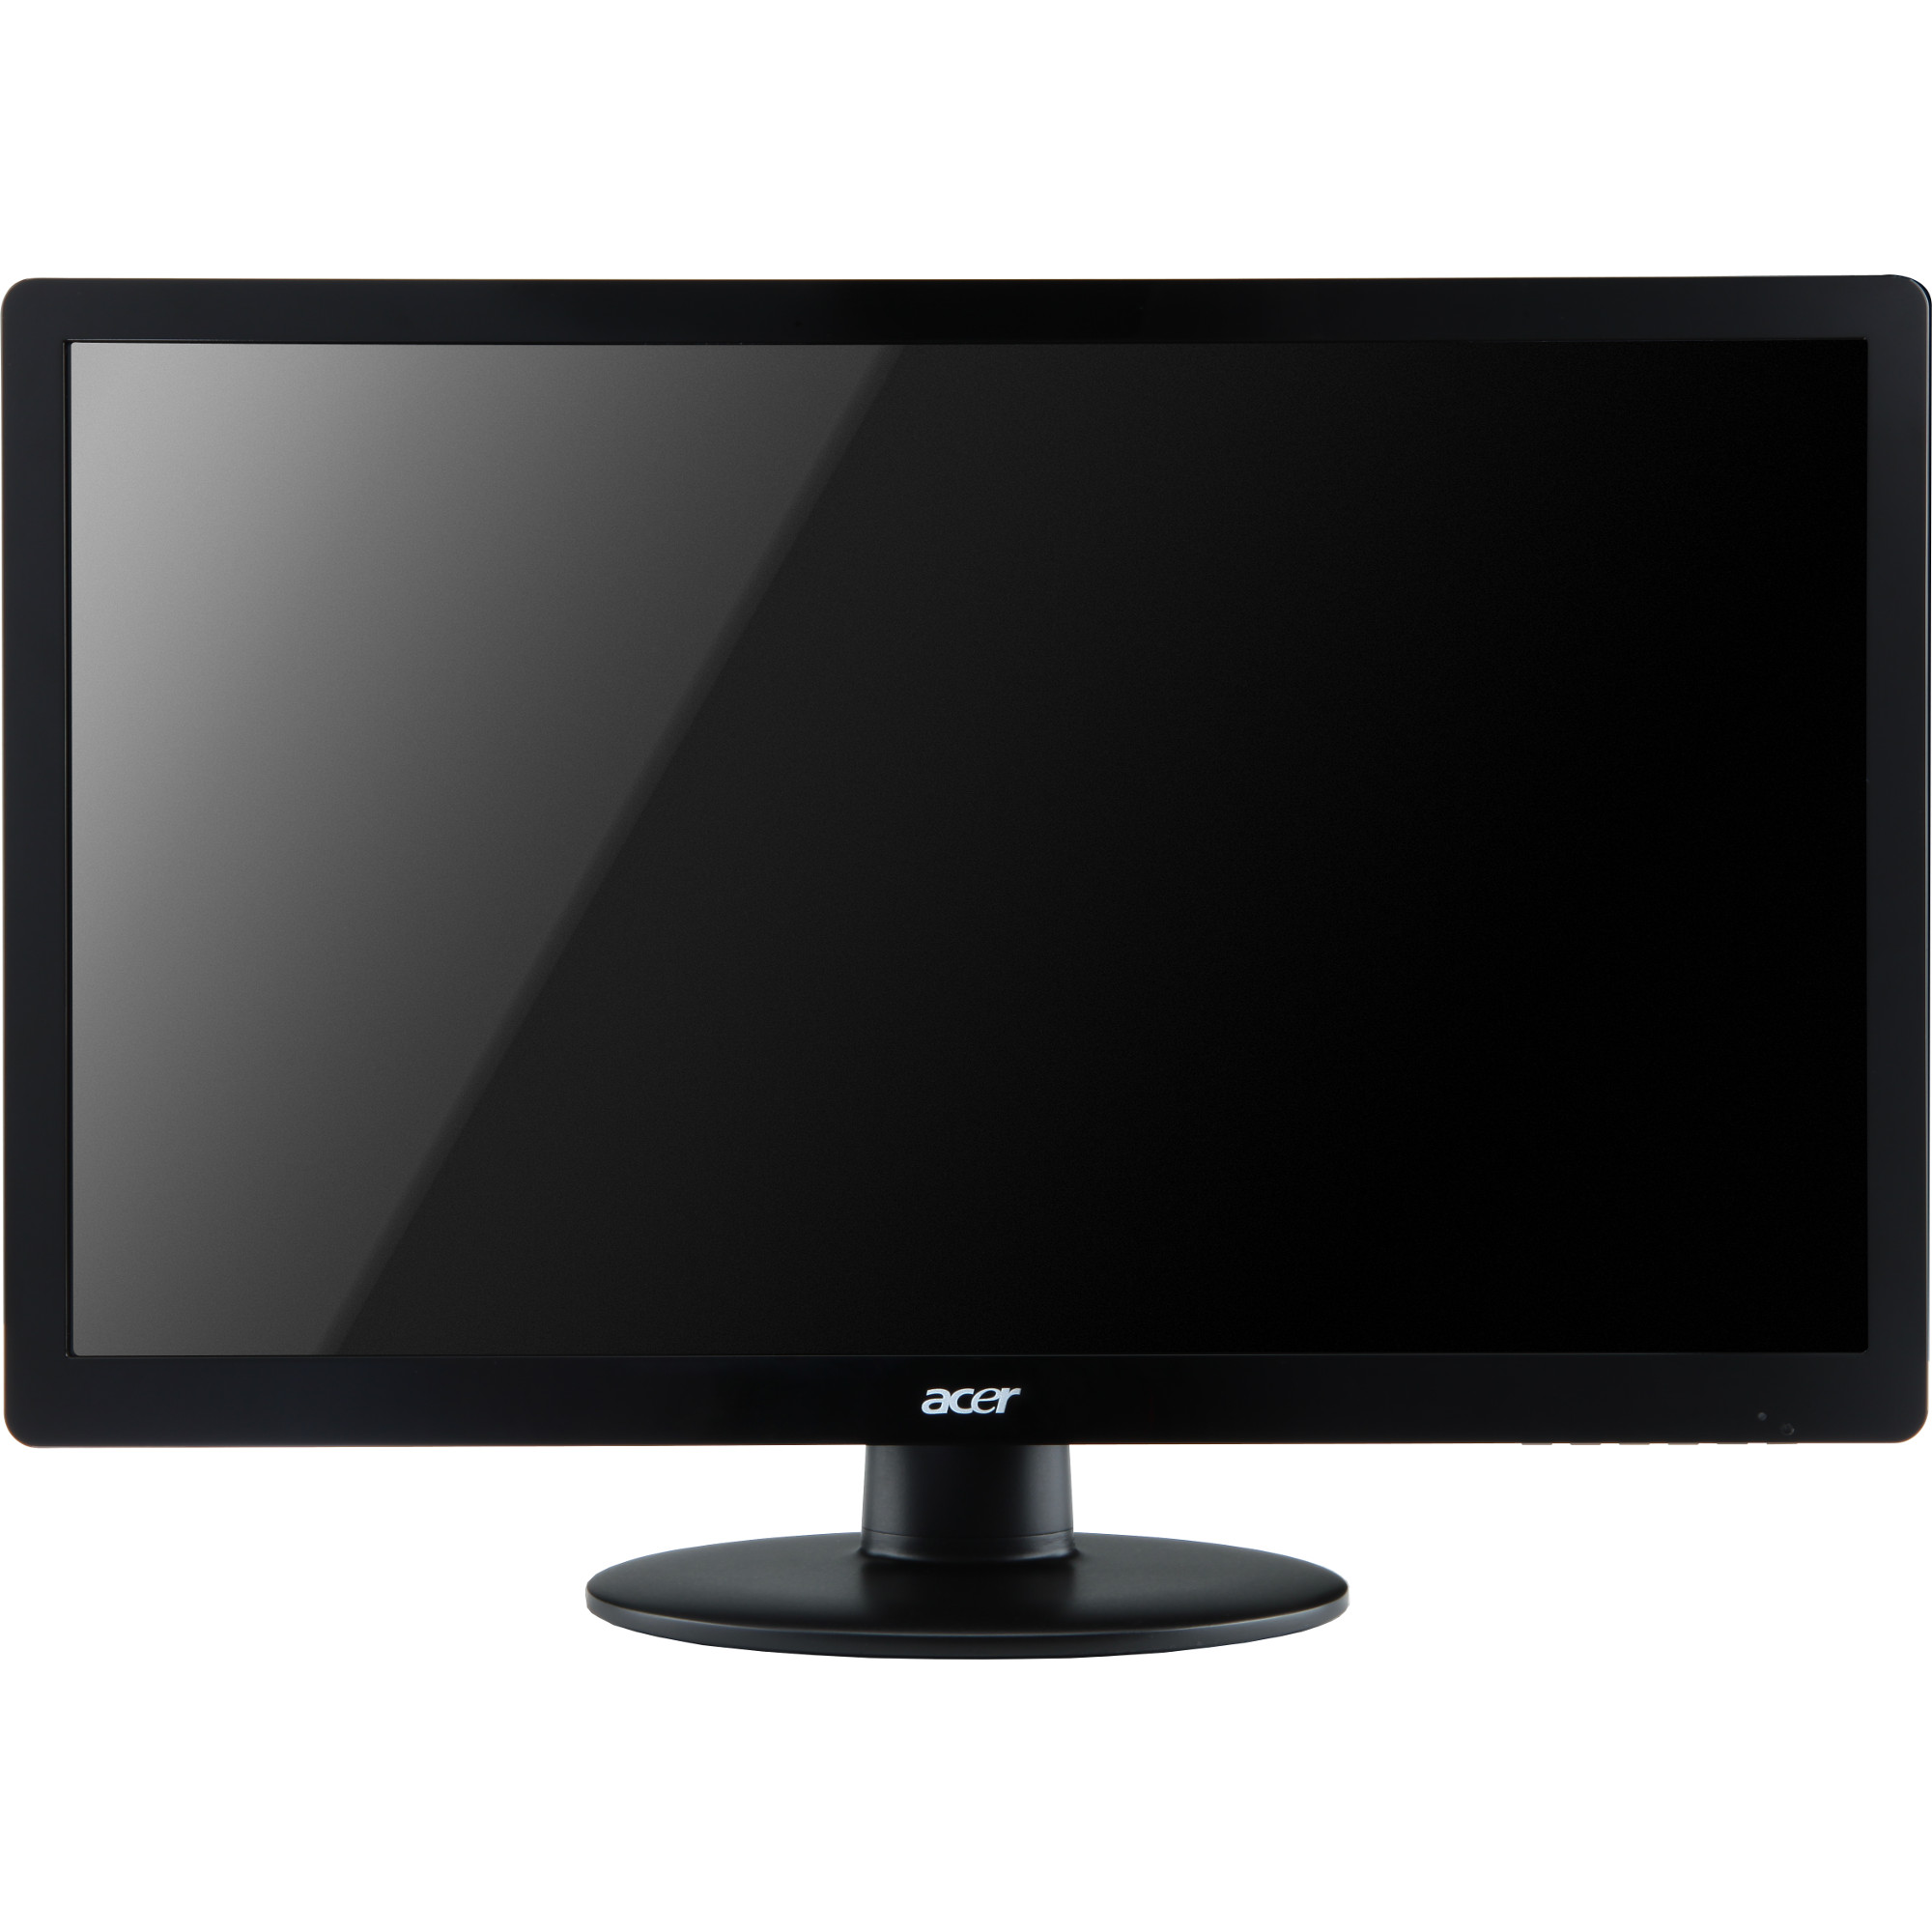  Monitor LED Acer S230HLB, 23", Full HD, Negru 